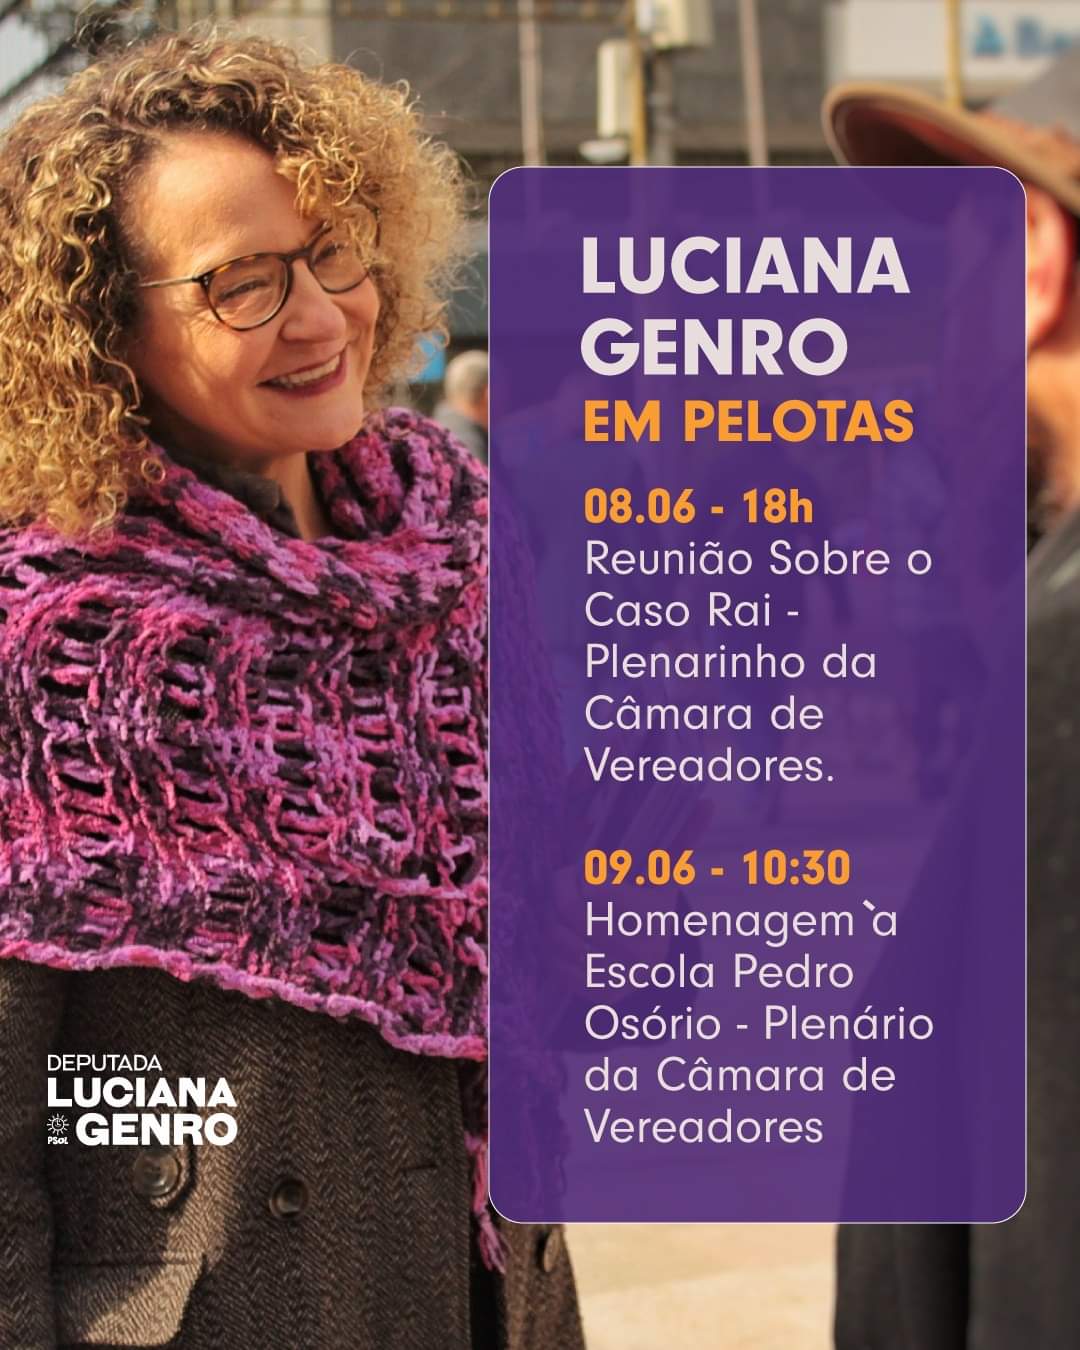 Luciana Genro em Pelotas